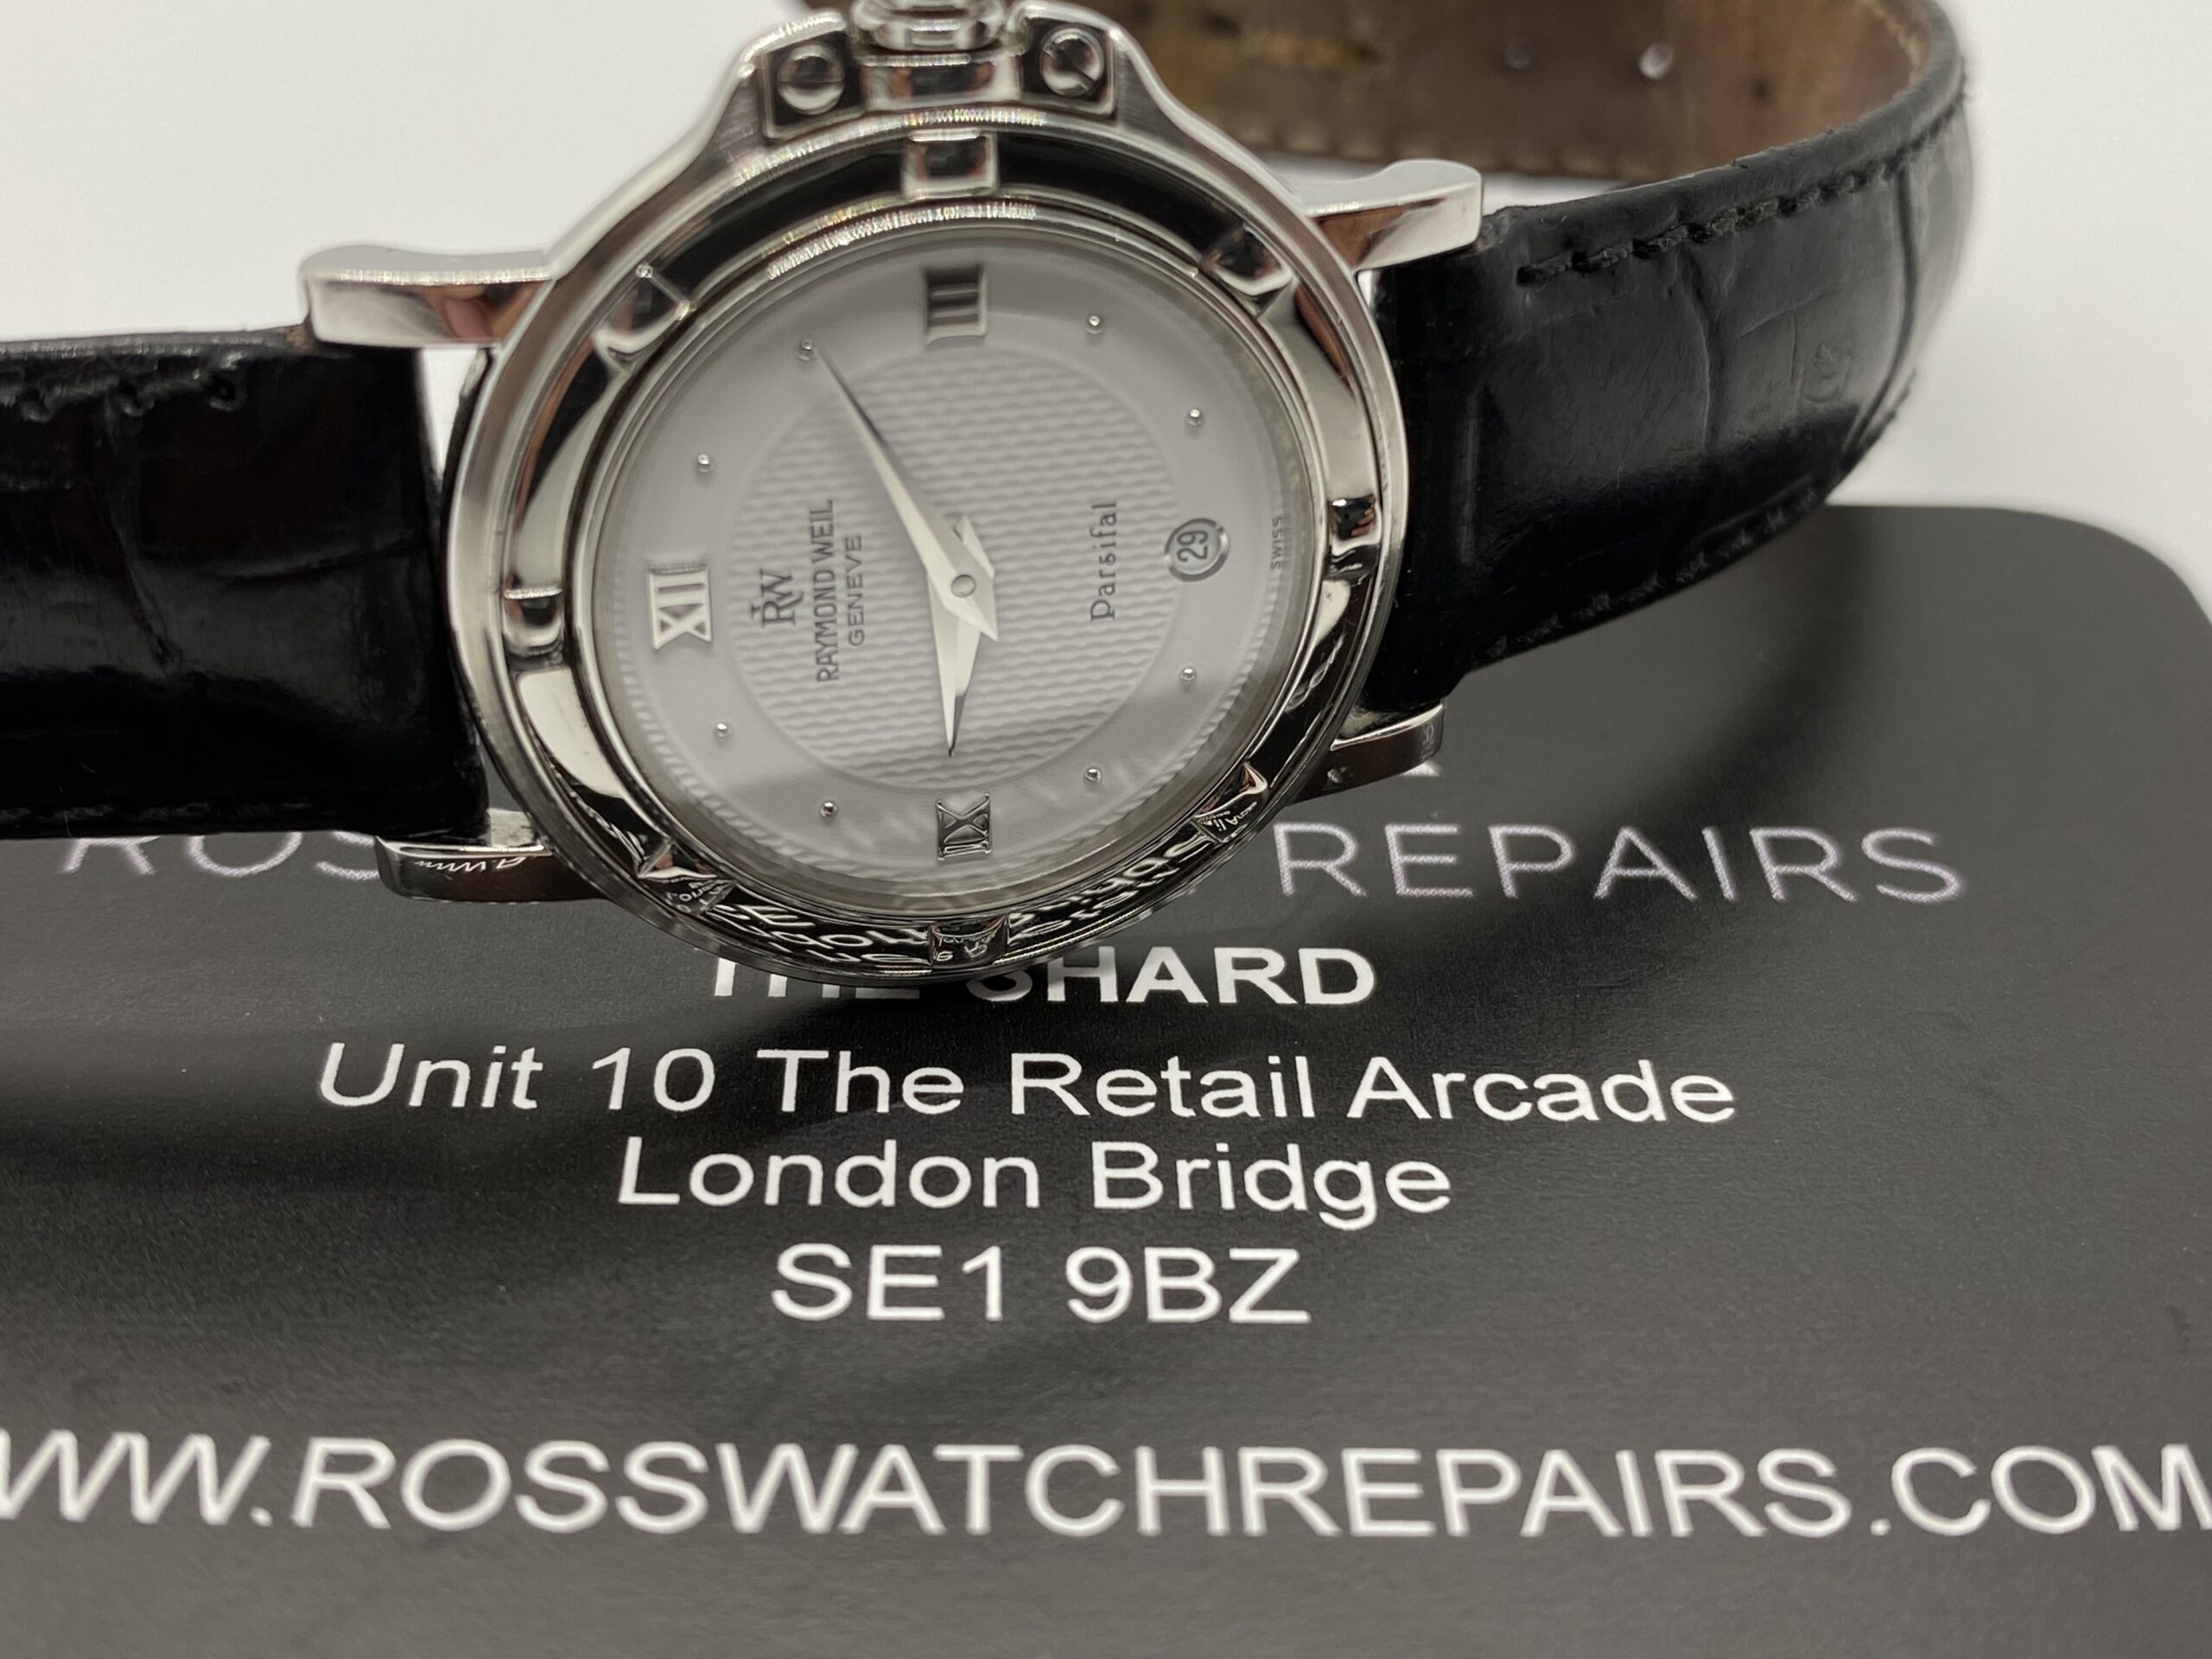 Raymond Weil watch repairs